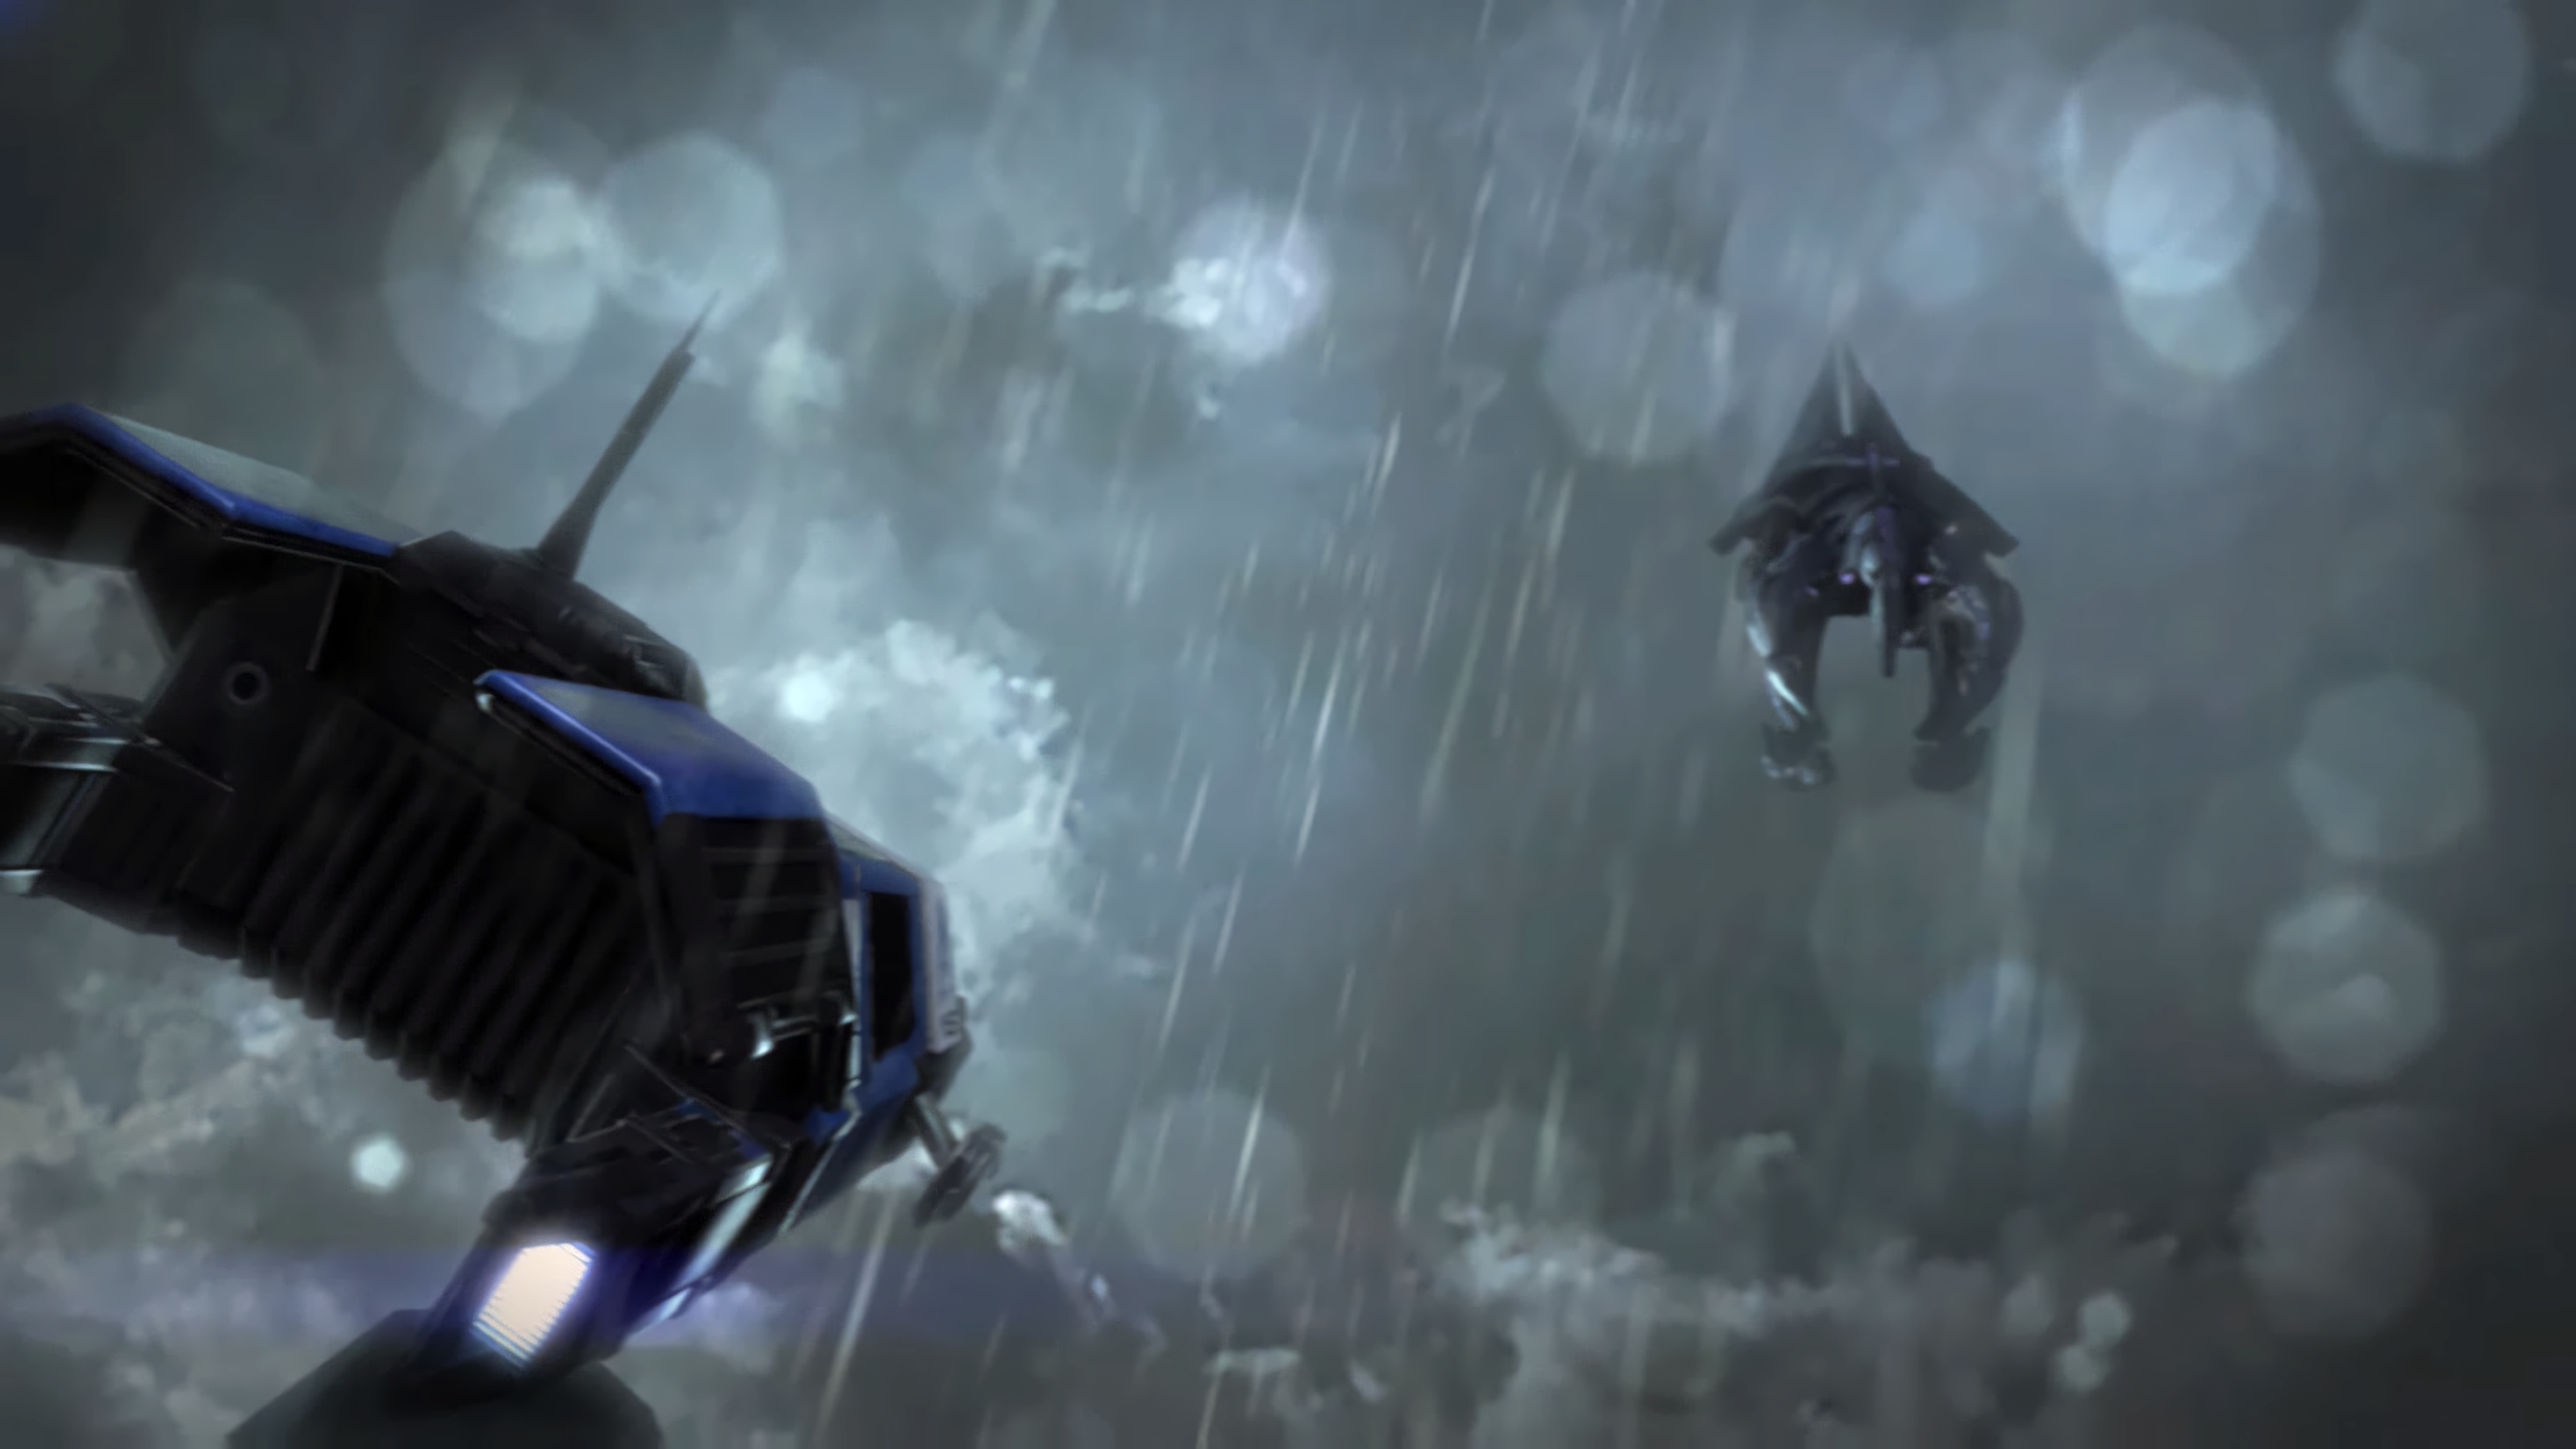 Mass Effect 3: Leviathan, Reaper, 4K Wallpaper, Legendary edition, 3840x2160 4K Desktop